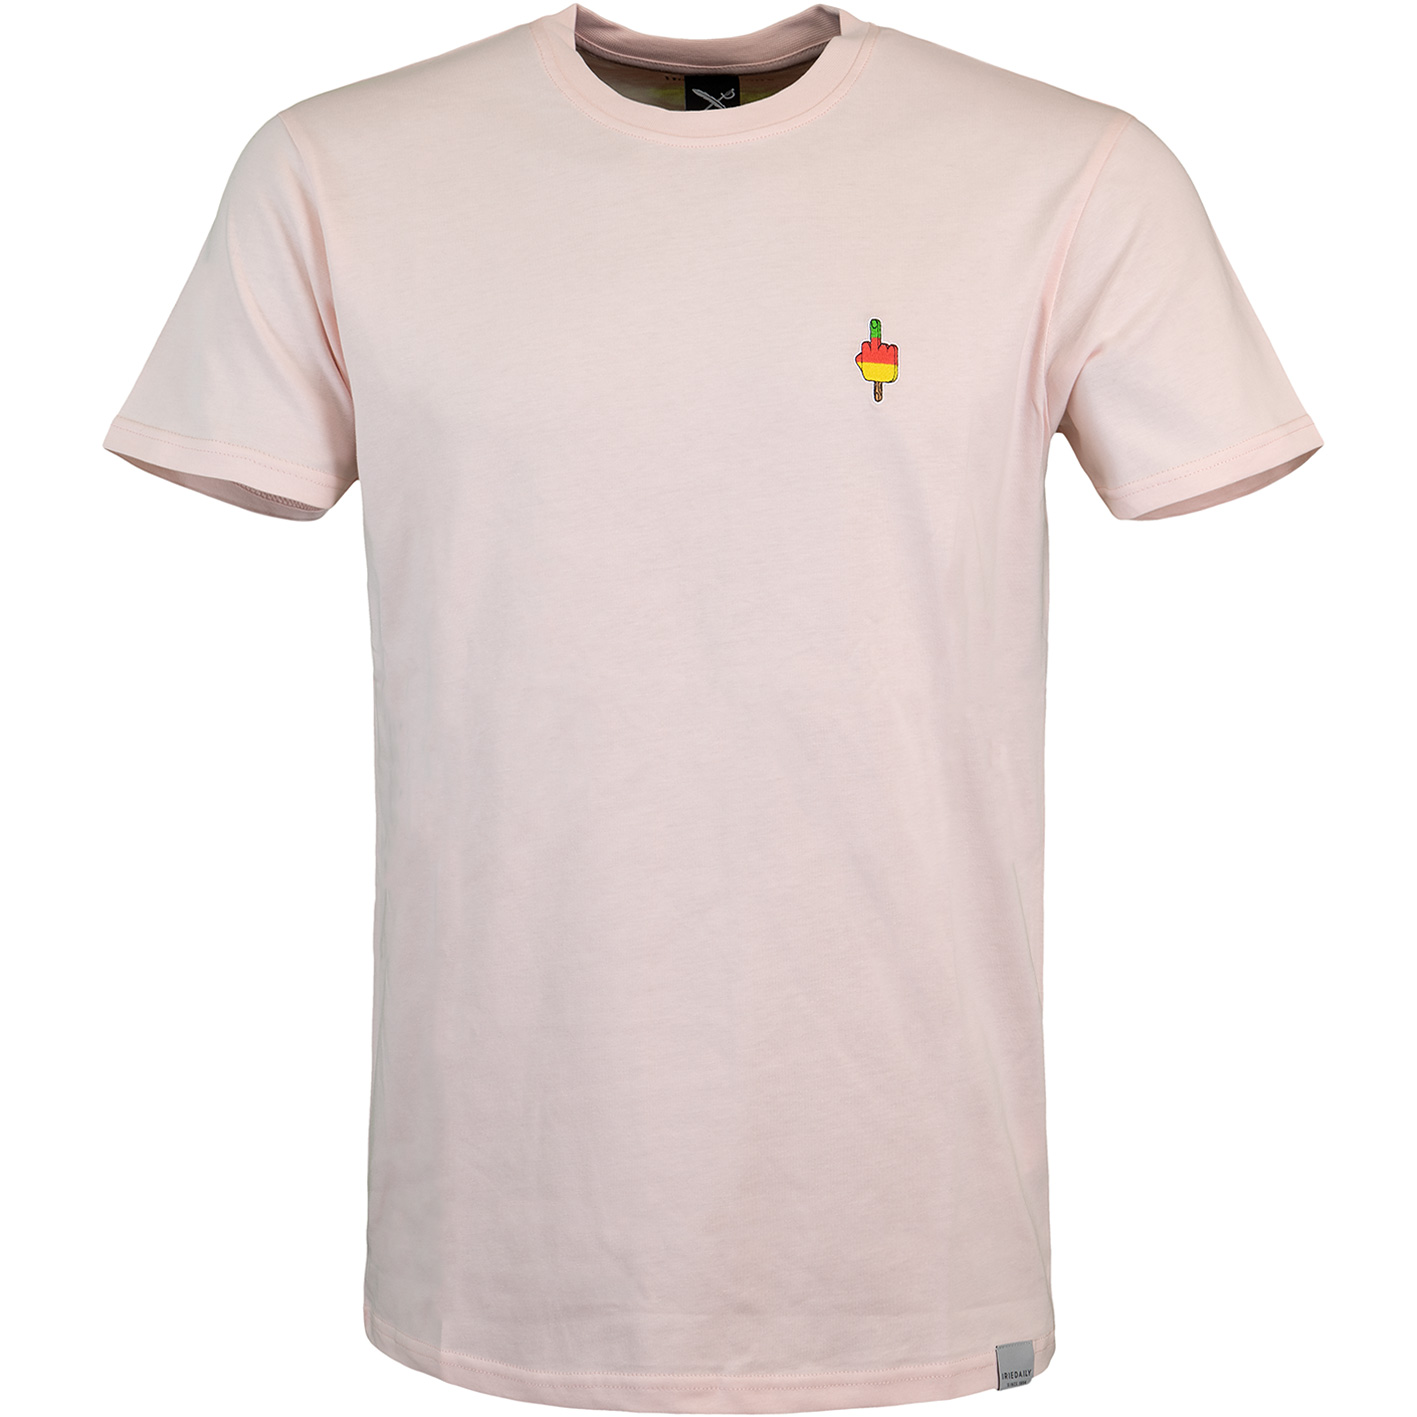 ☆ Iriedaily Flutscher Embroidered T-Shirt rosa - hier bestellen!